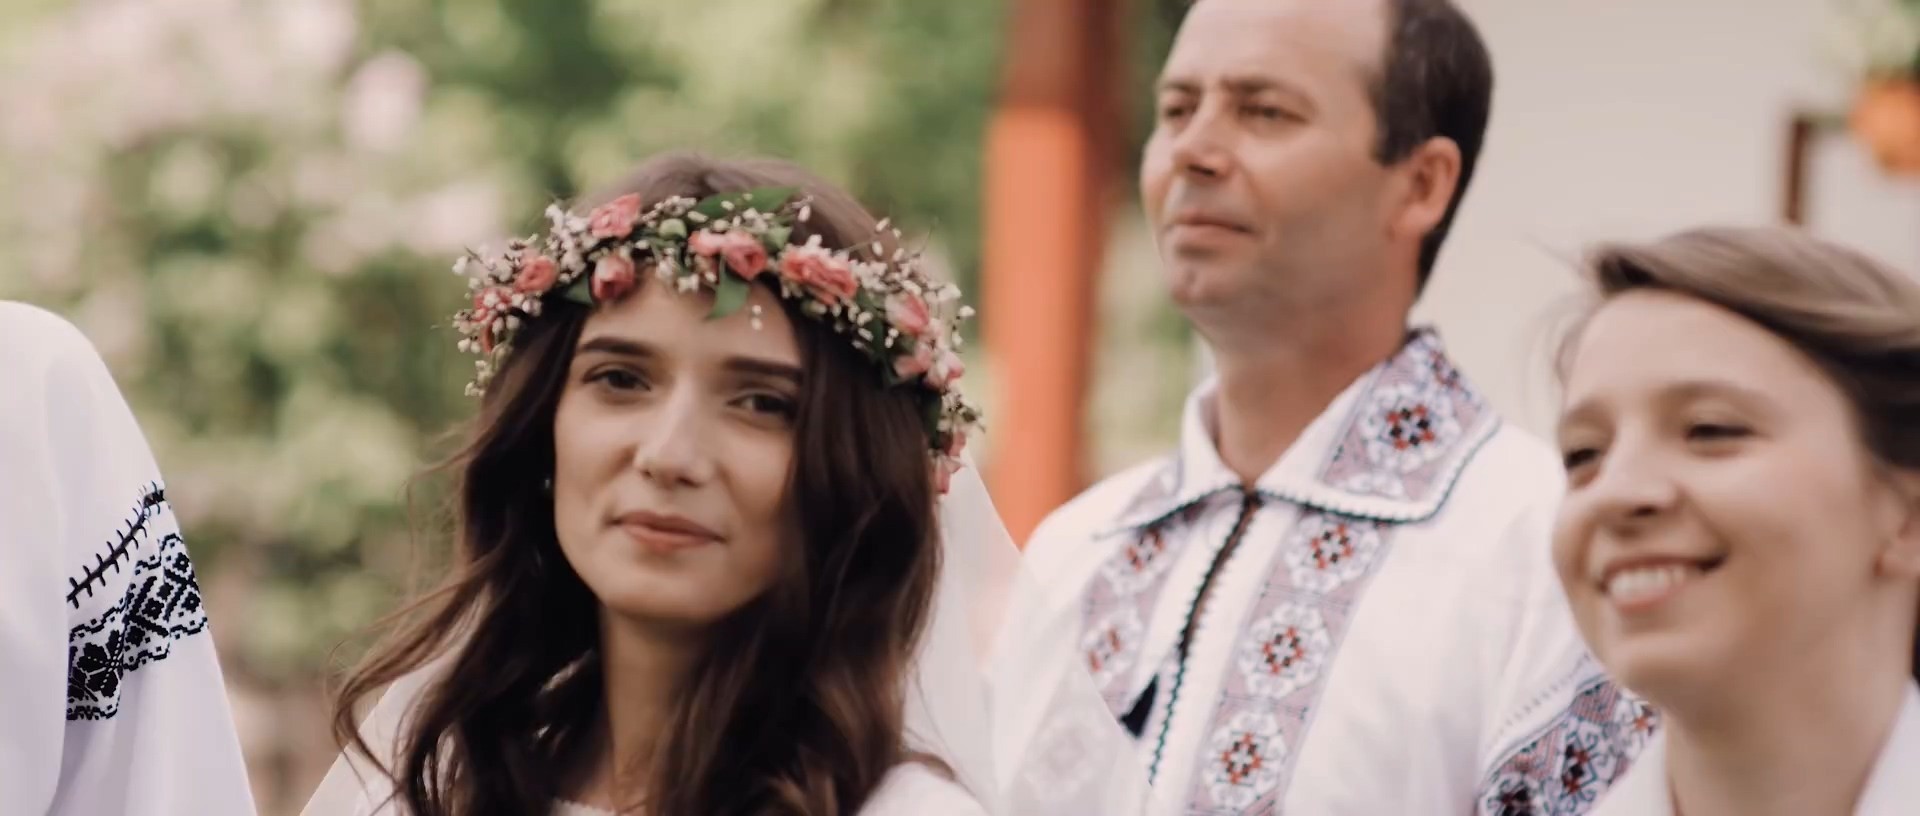 Iustina Irimia - Cântec de nuntă Versuri